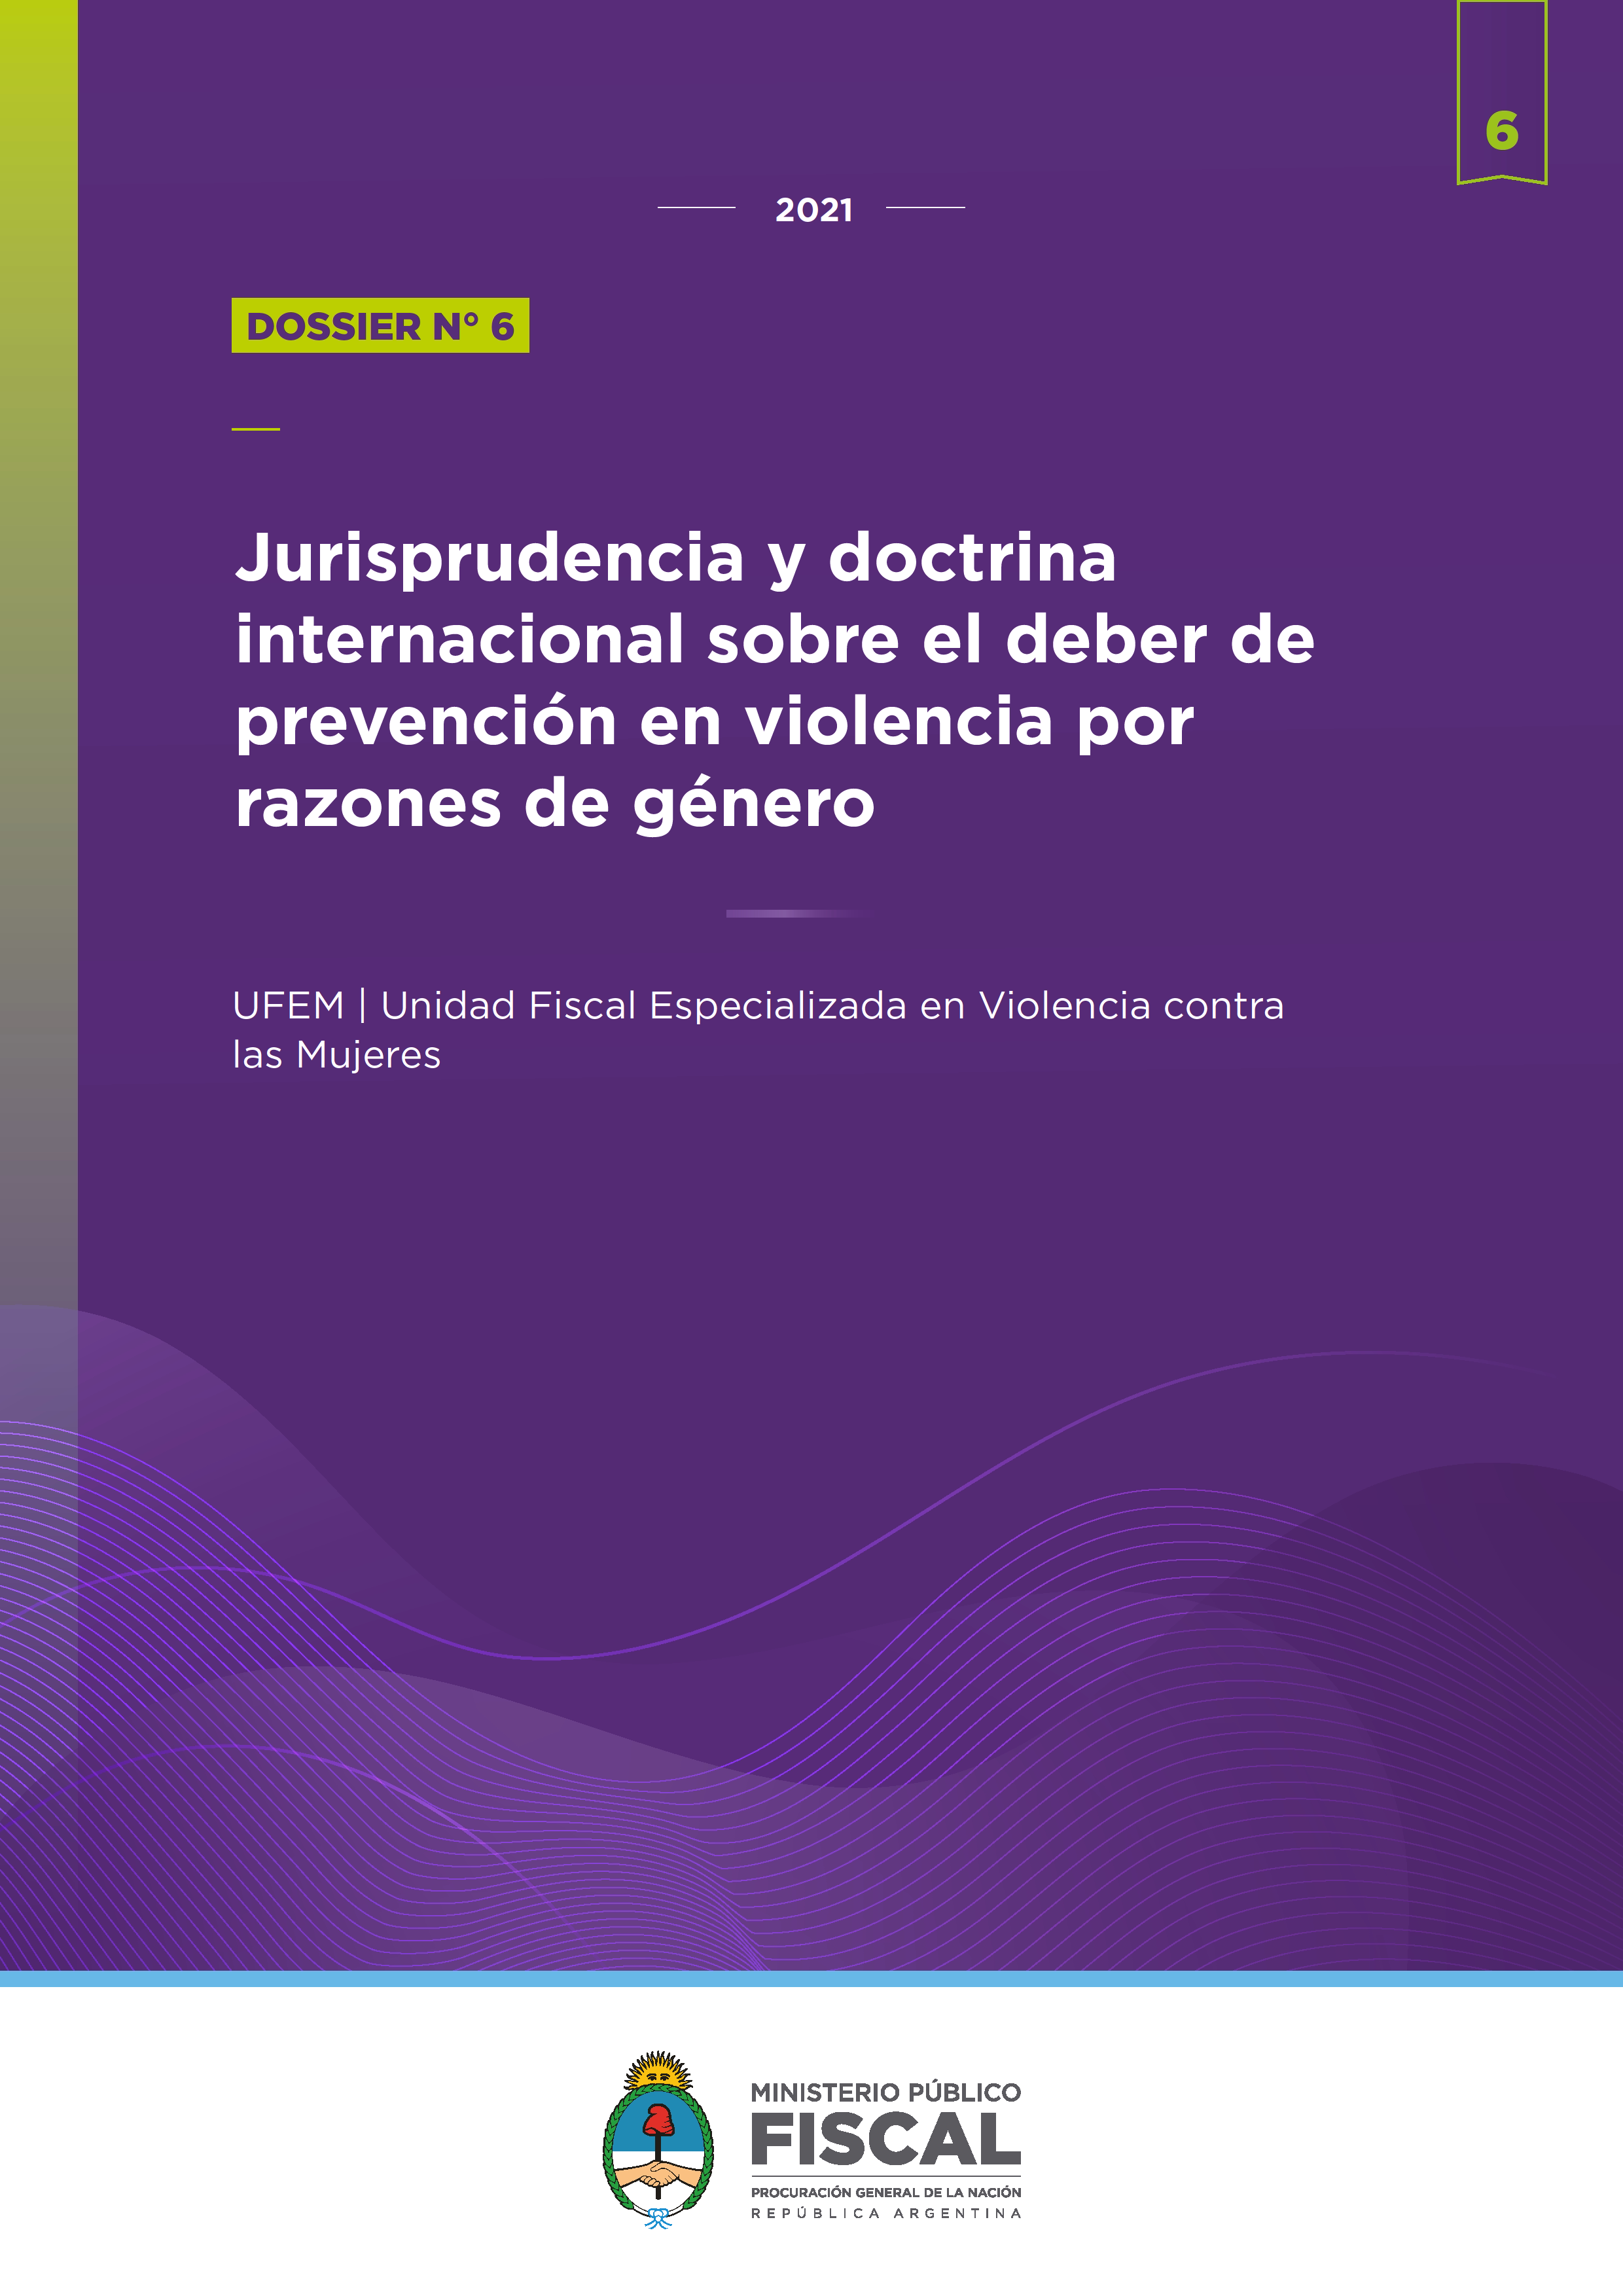 Dossier de jurisprudencia y doctrina N° 6: Jurisprudencia y doctrina internacional sobre el deber de prevención en violencia por razones de género